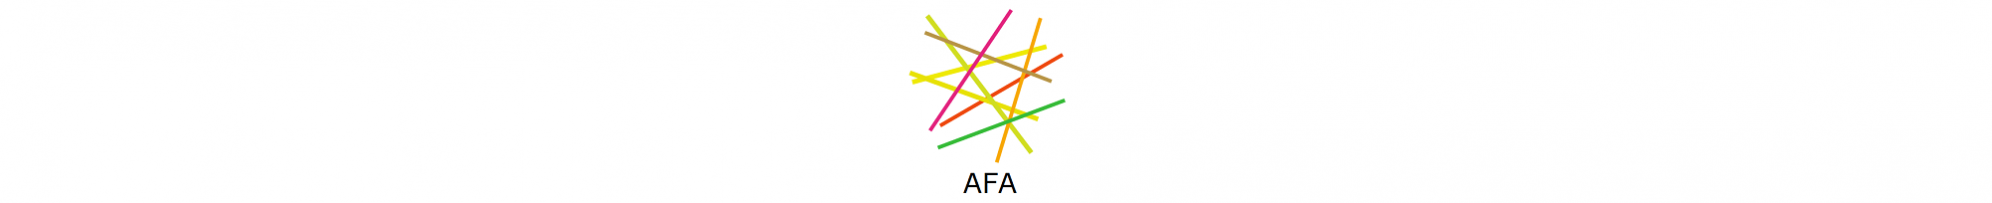 AFA est un outil d'analyse financière et économique des chaînes de valeur agricoles et agroalimentaires